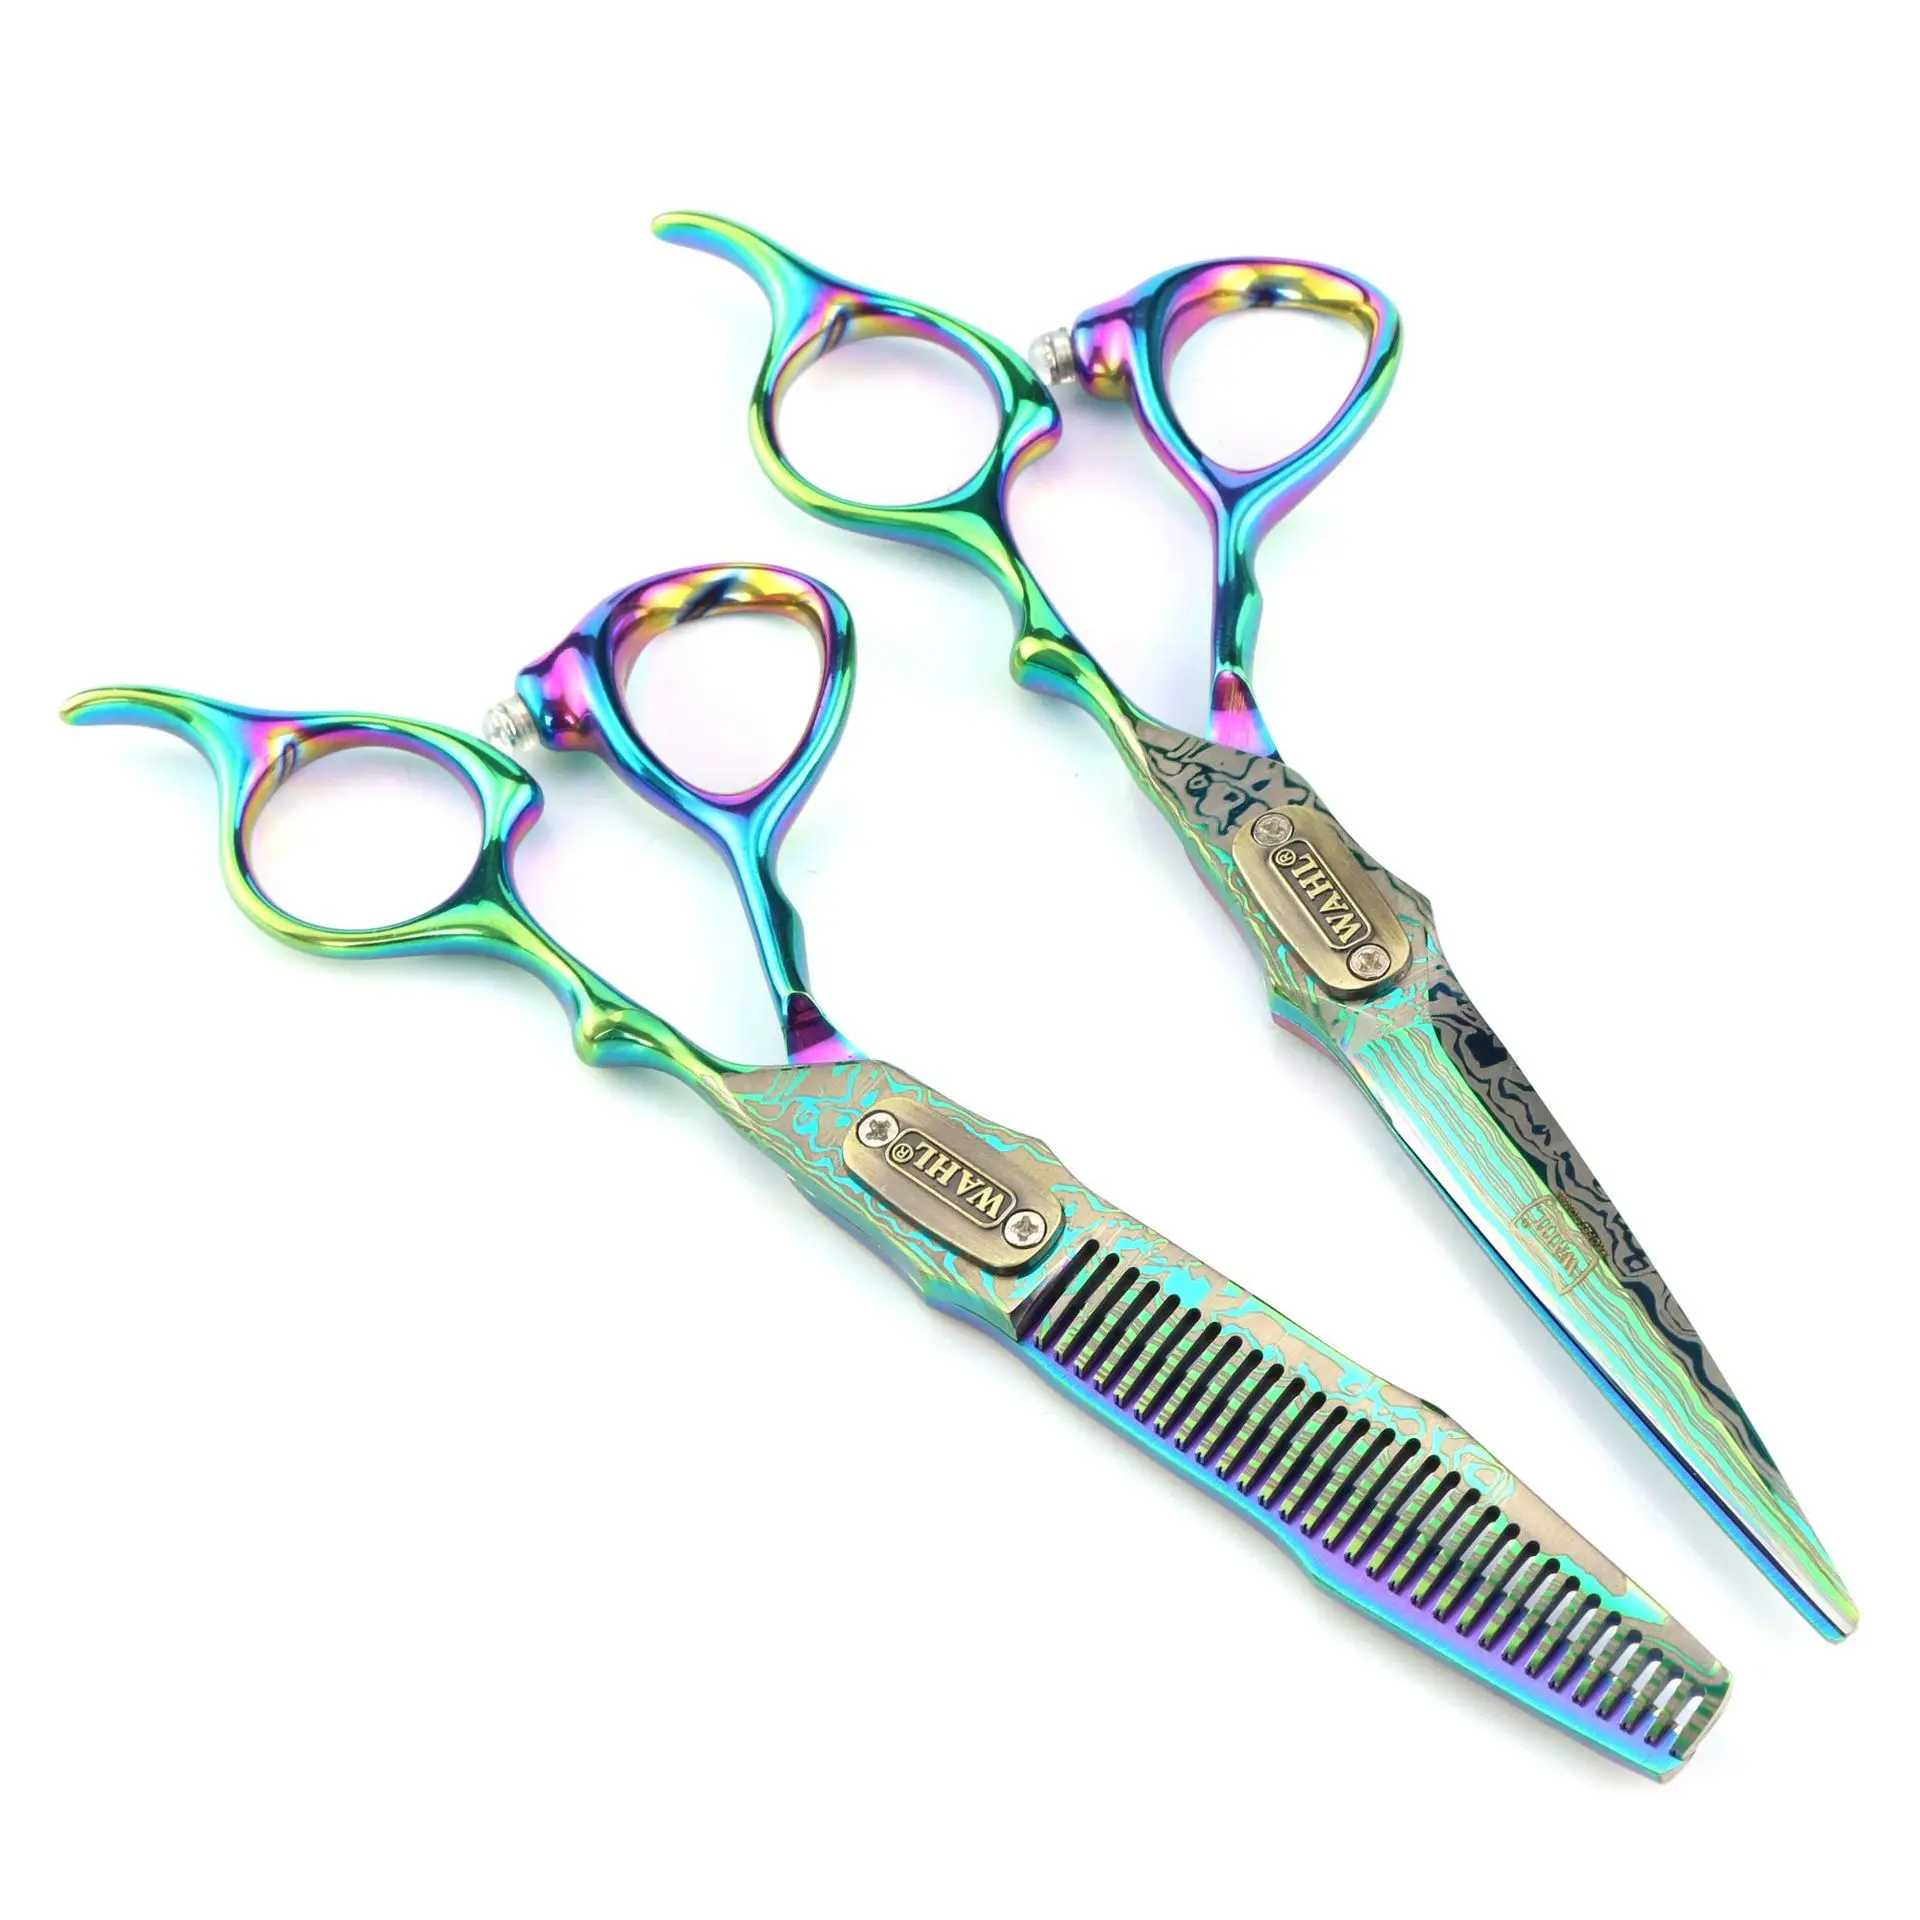 

Профессиональные Парикмахерские ножницы JP440C Salon 6,0, ножницы для стрижки и филировки, набор парикмахерских ножниц